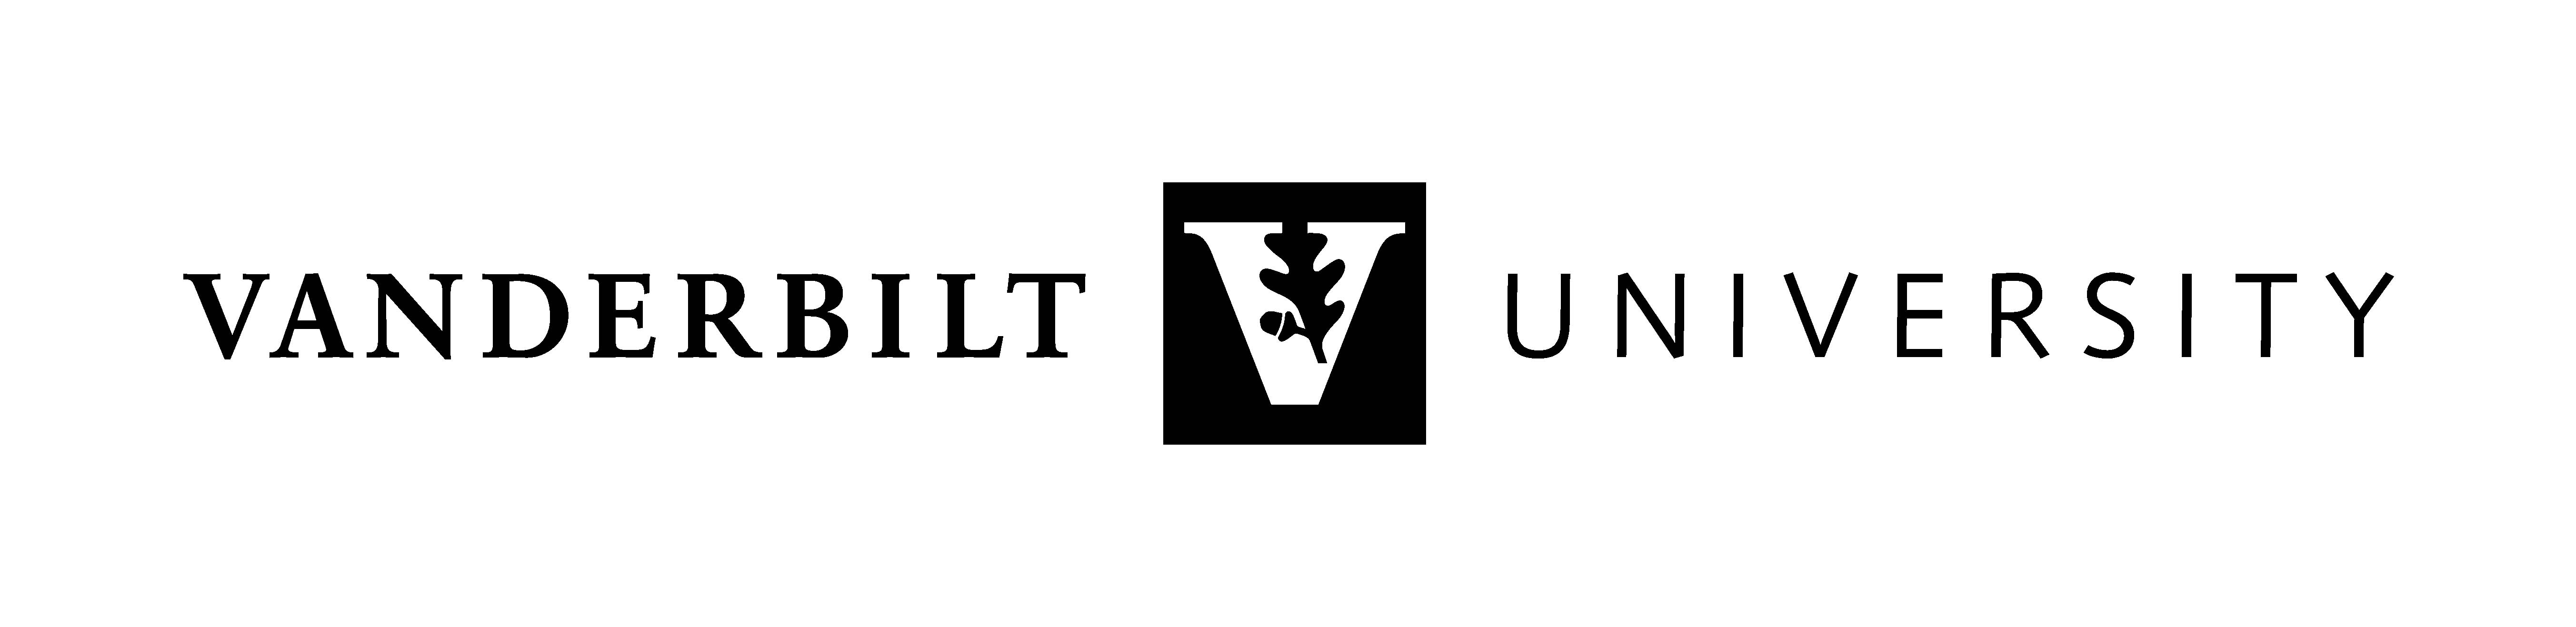 Official Vanderbilt University Logos | Vanderbilt News | Vanderbilt University